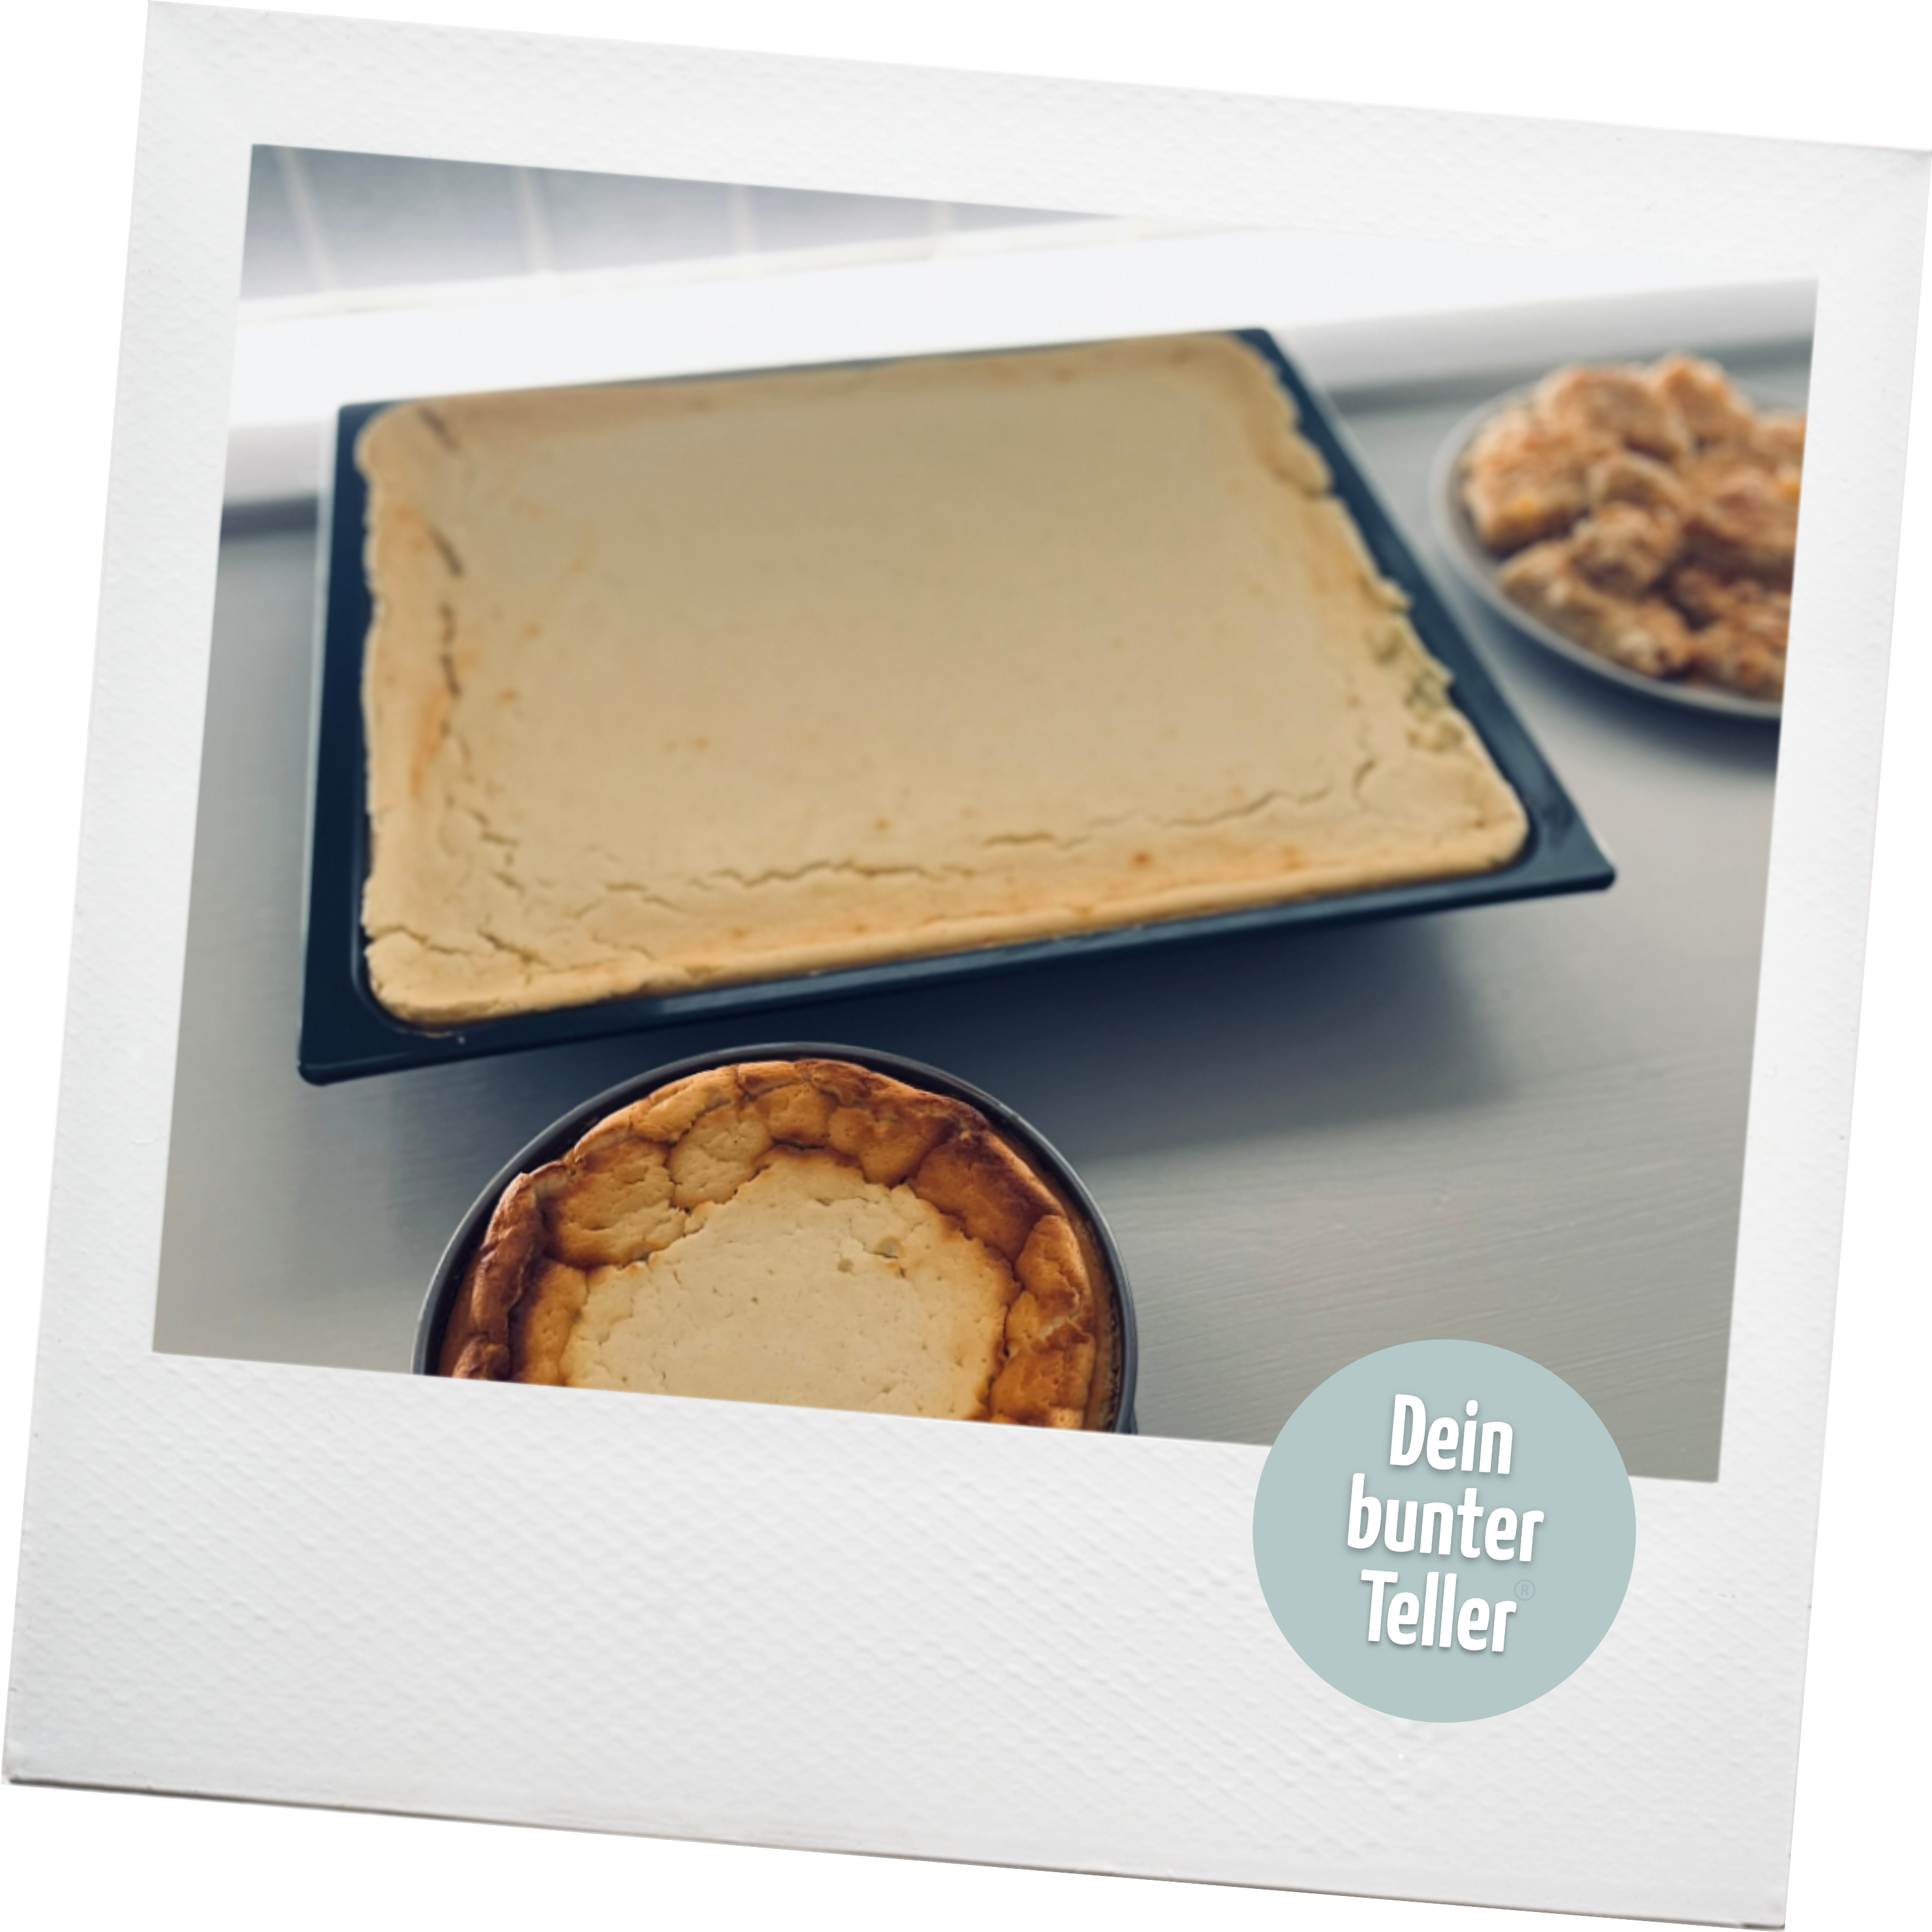 Ein Polaroid, auf dem ein Backblech und eine Sprinform mit frisch gebackenem Käsekuchen abgebildet ist. Außerdem ist das Logo von "Dein bunter Teller" abgebildet.